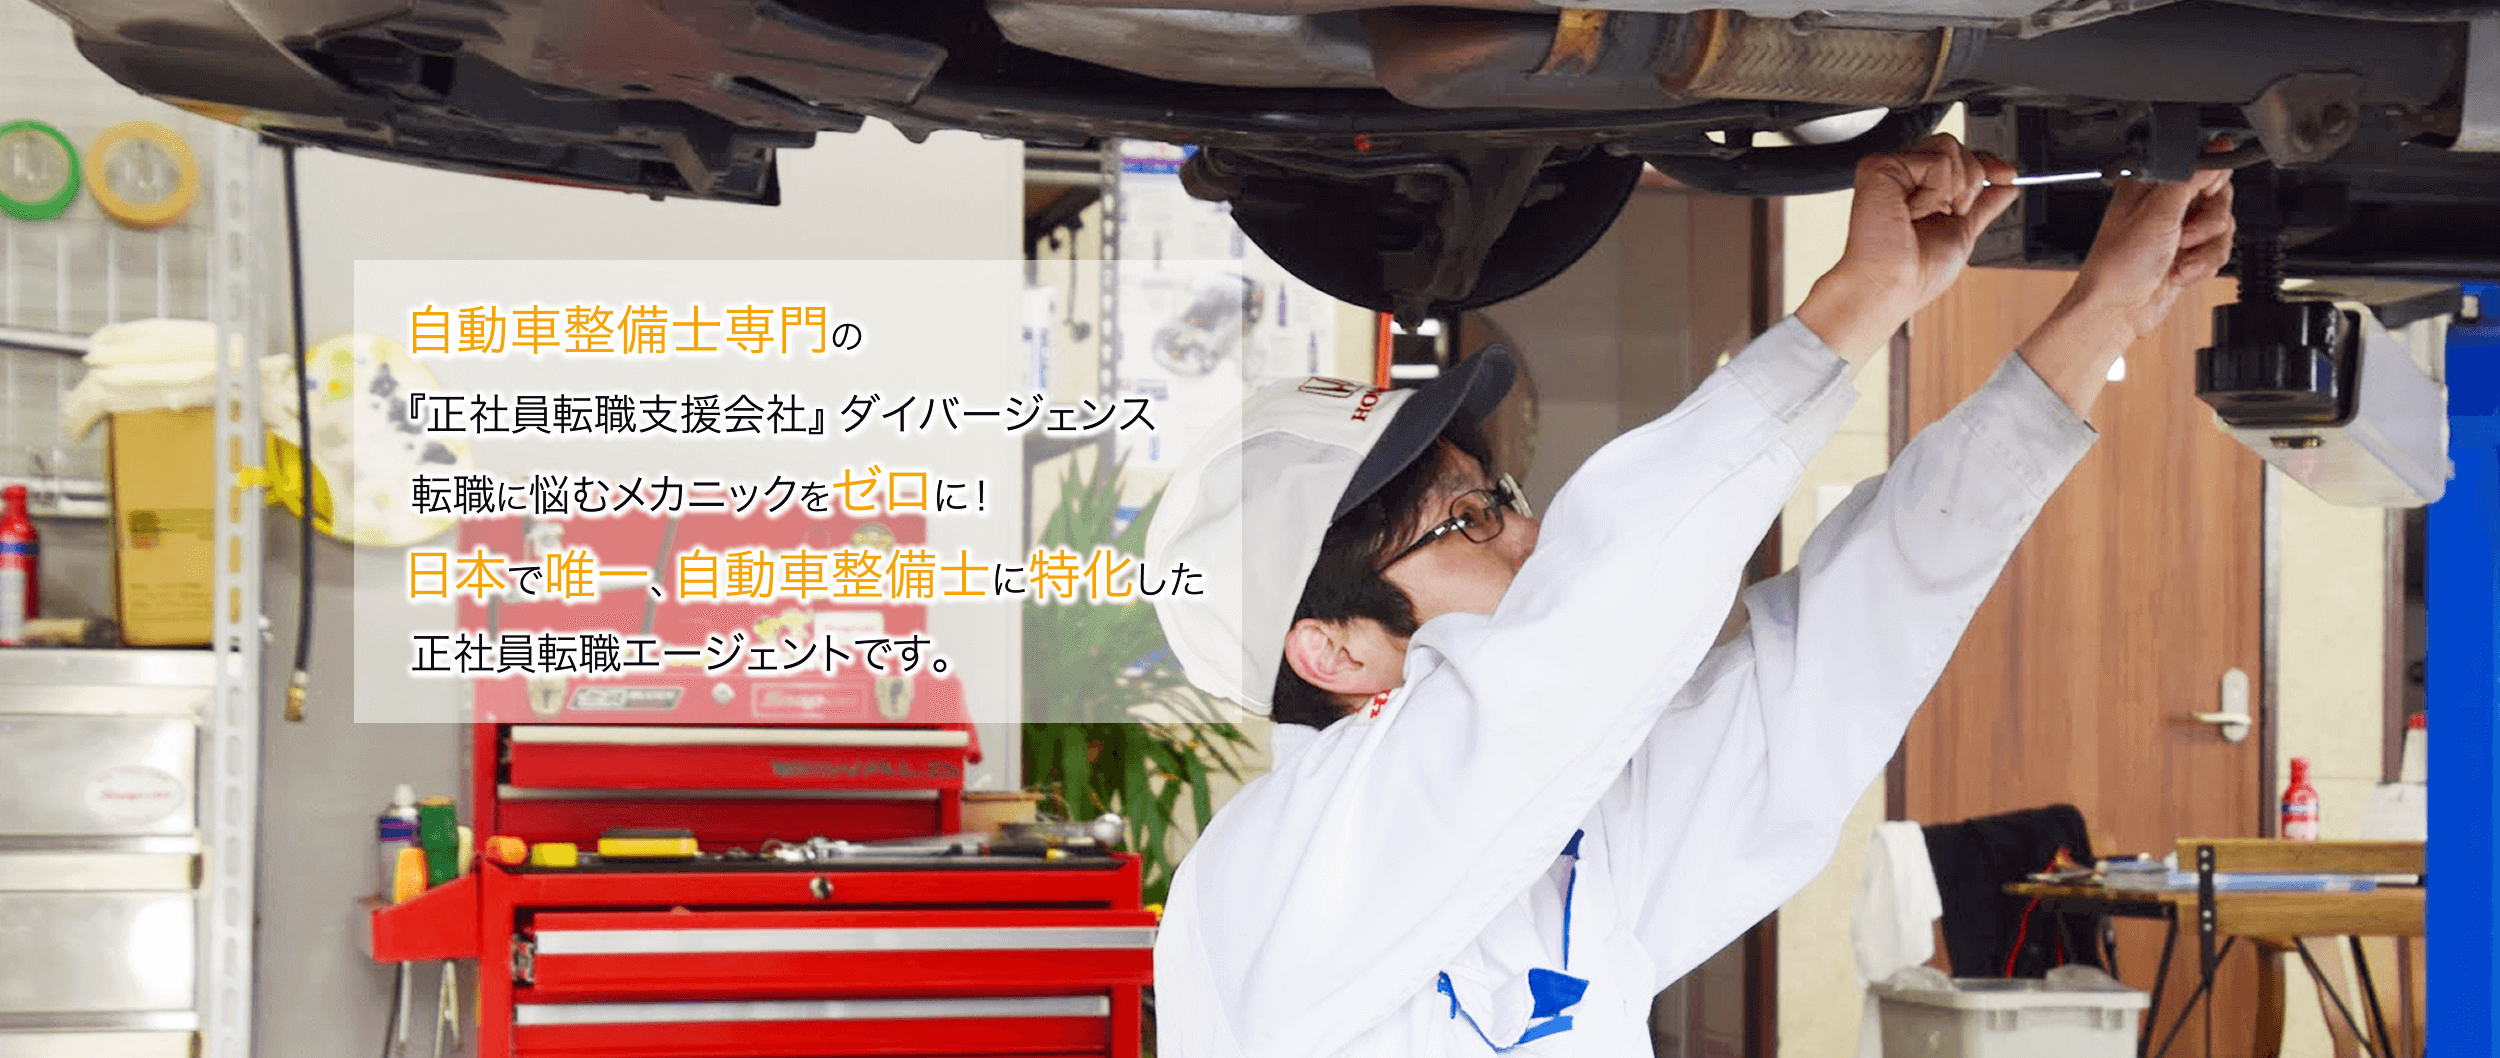 自動車整備士専門の『正社員転職支援会社』ダイバージェンス 転職に悩むメカニックをゼロに！日本で唯一、自動車整備士に特化した正社員転職エージェントです。